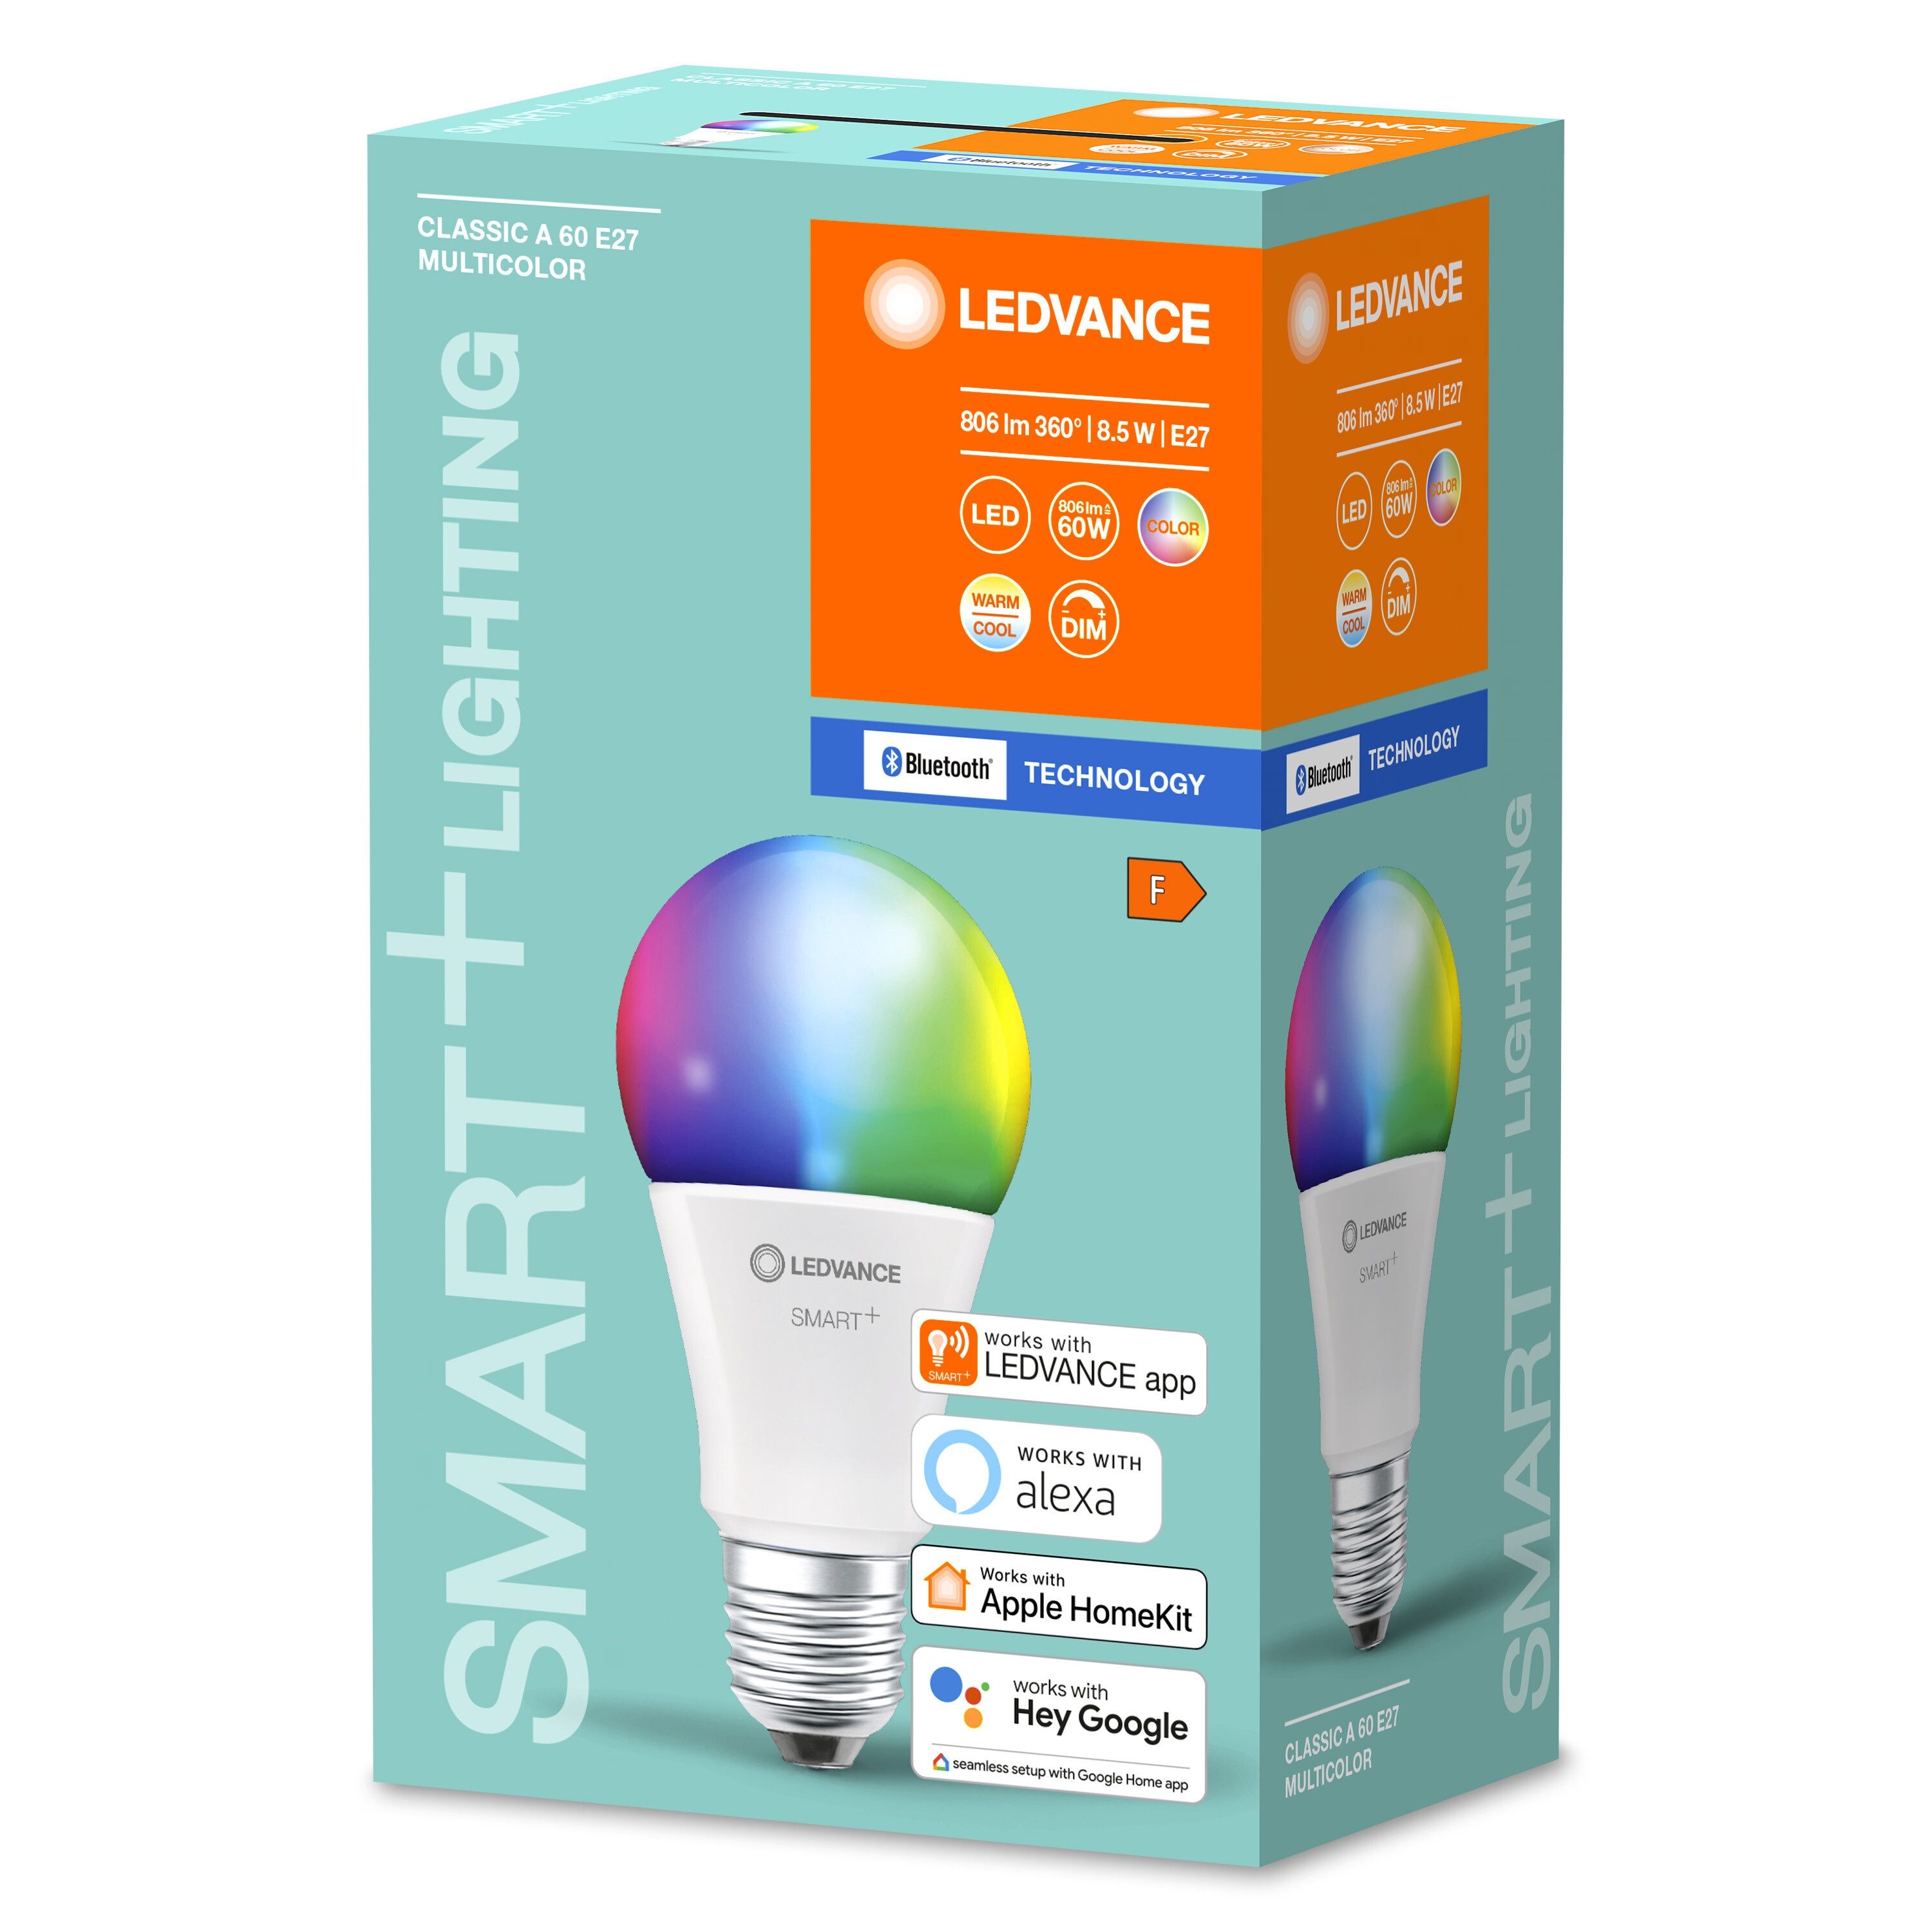 LEDVANCE SMART+ Classic LED Lampe RGBW